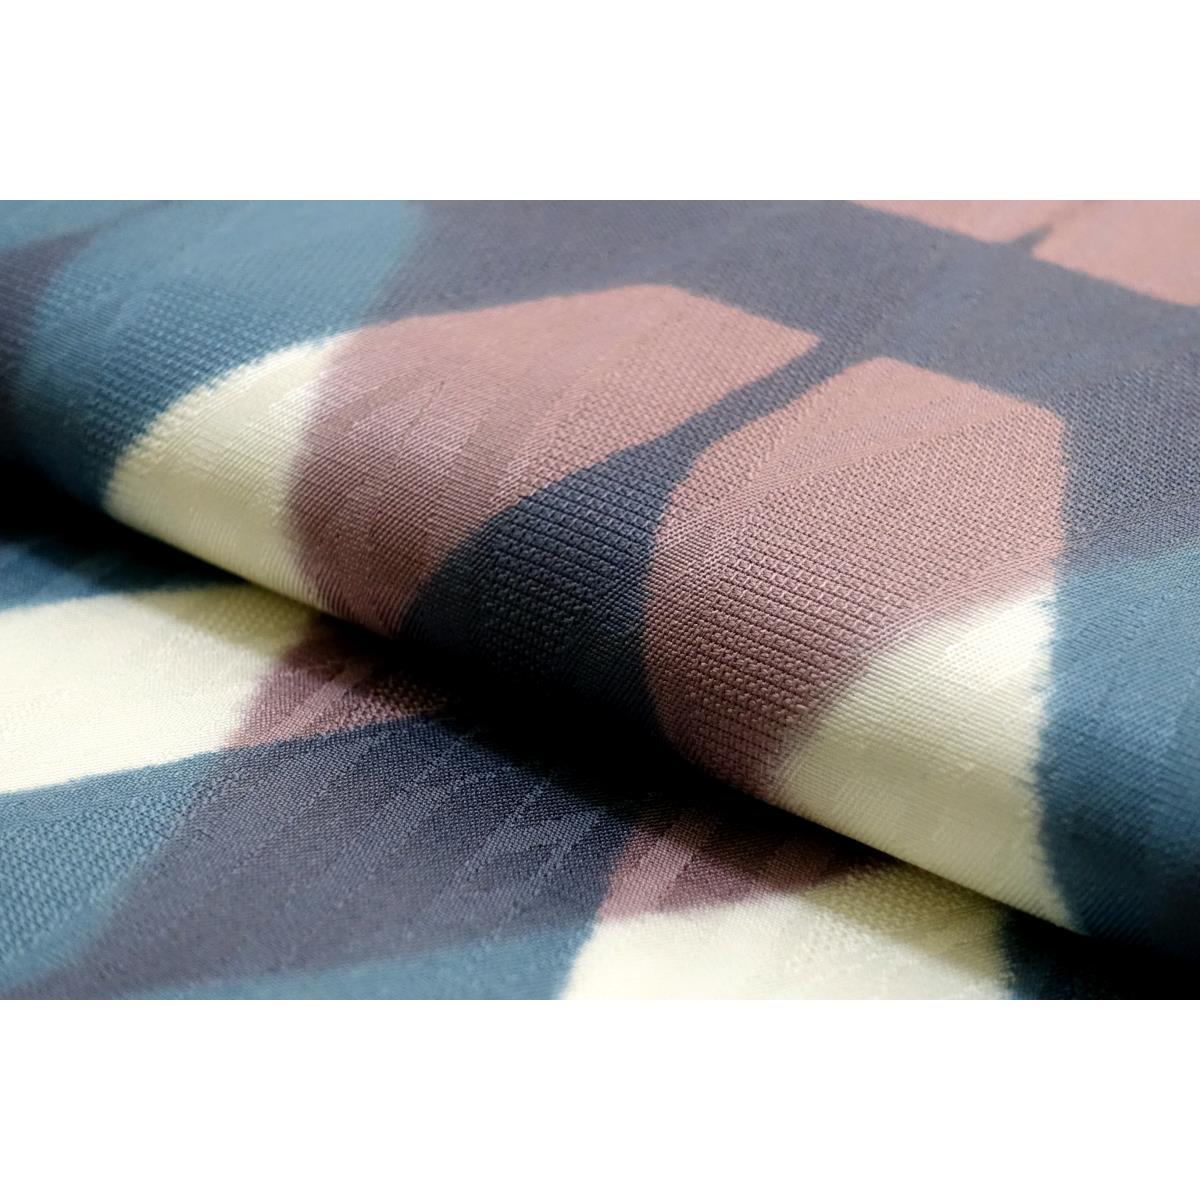 Fukuro obi dyed obi Zento pattern